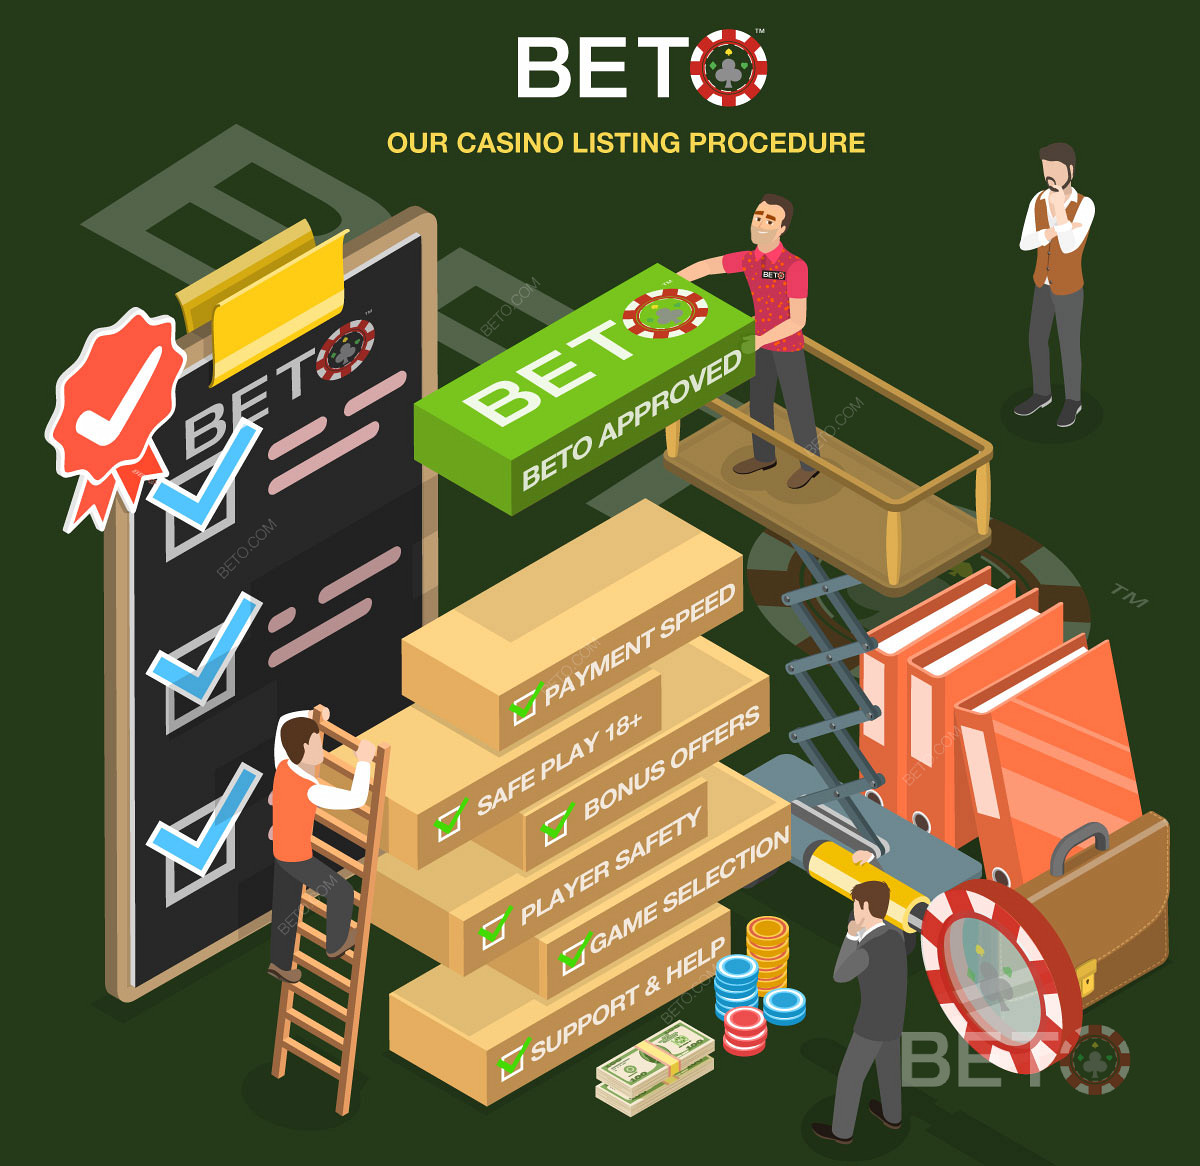 Podrobný proces hodnotenia kasín na BETO.com